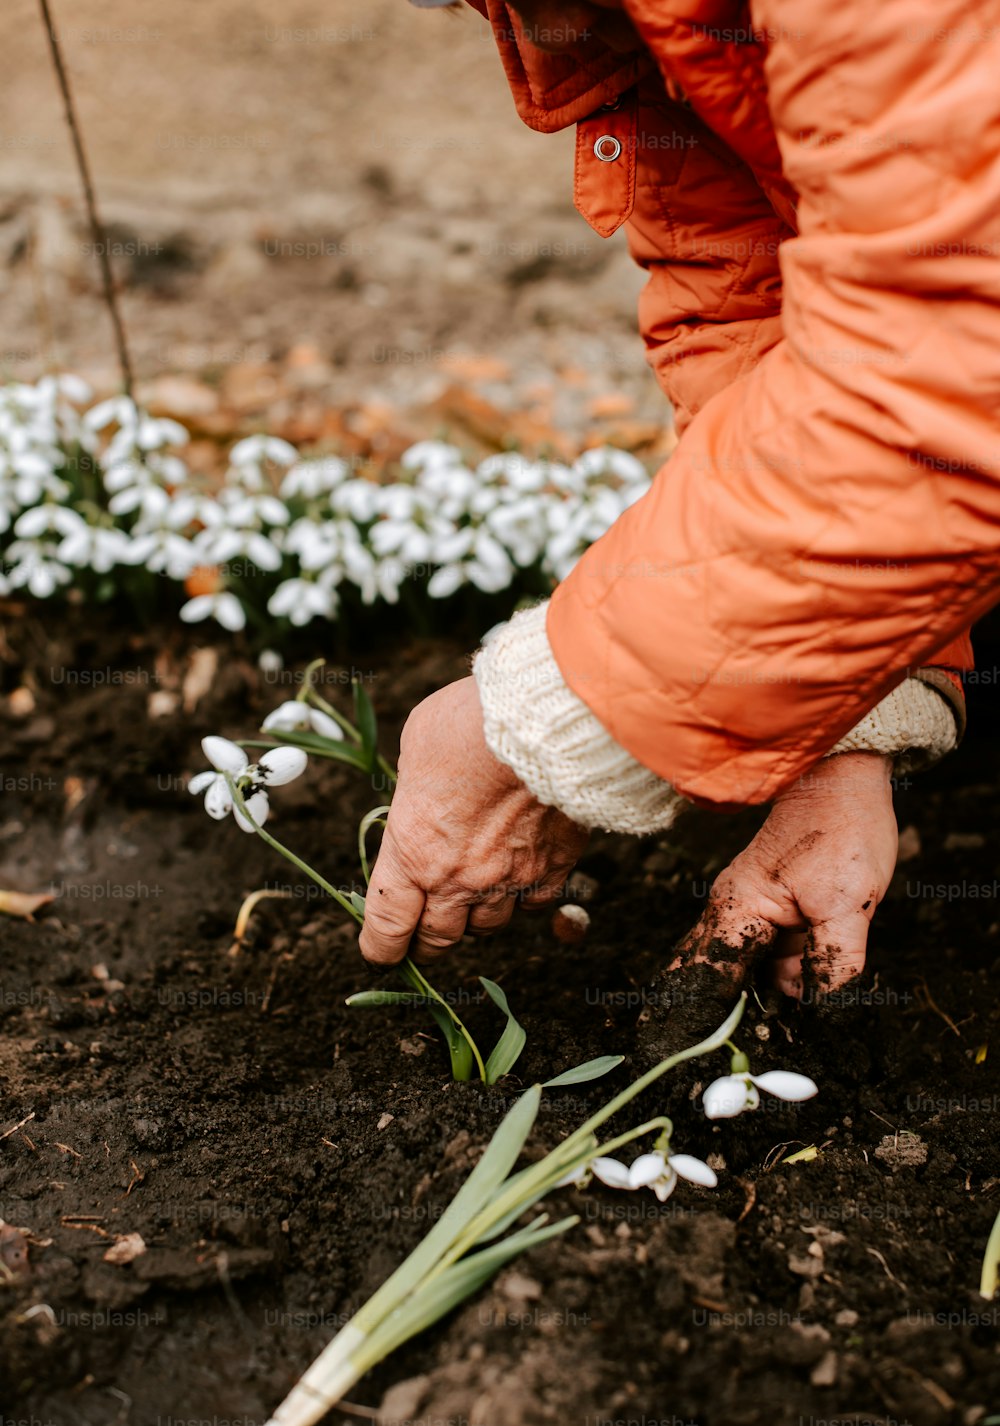 Eine Person in einer orangefarbenen Jacke pflanzt Blumen